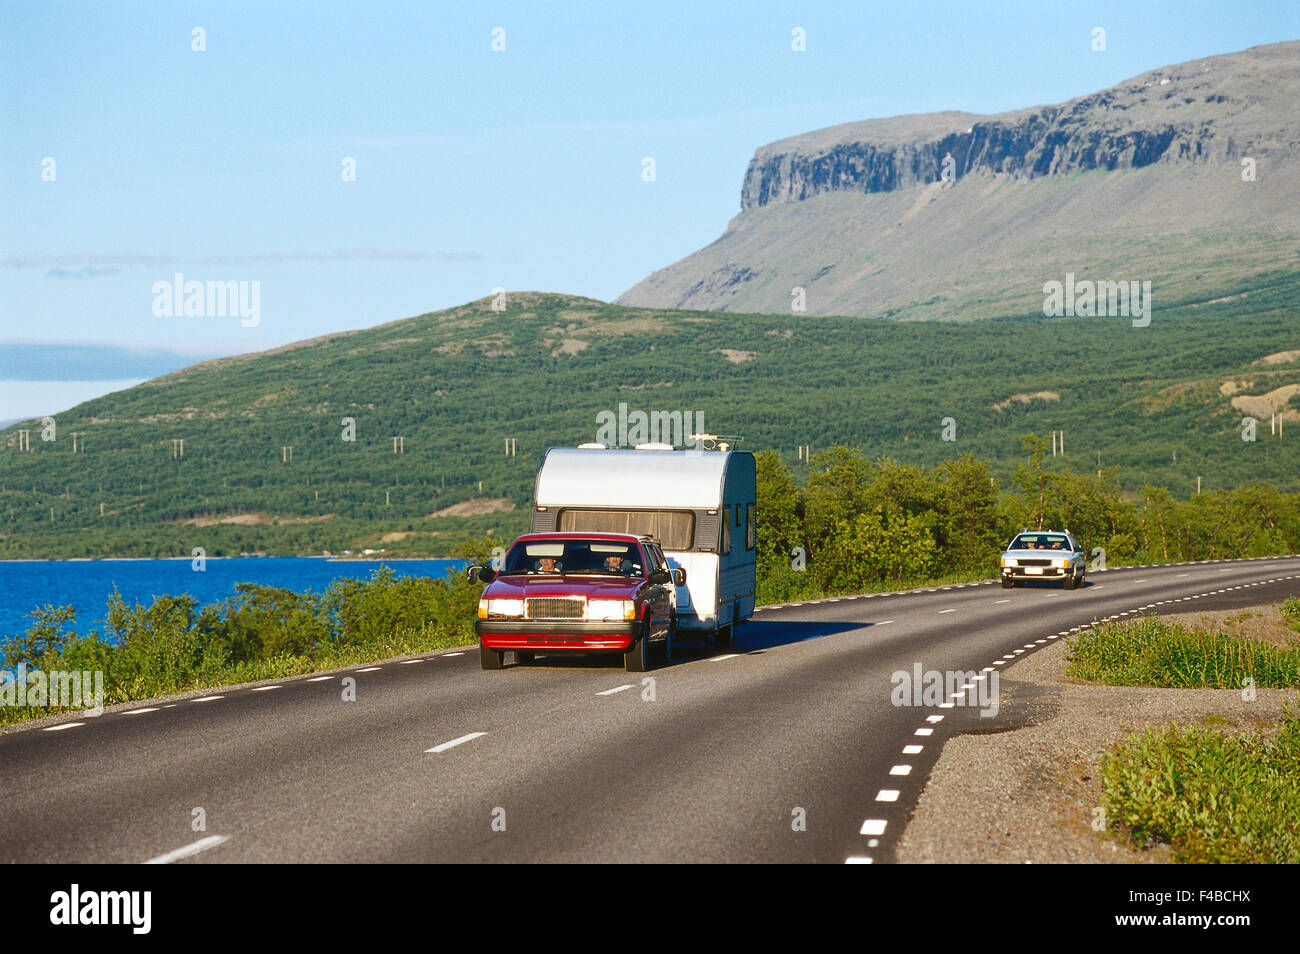 Auto Auto vacanza immagine a colori country road holiday orizzontale paesaggio del lago Lapponia motoring natura della montagna strada Scandinavia Foto Stock